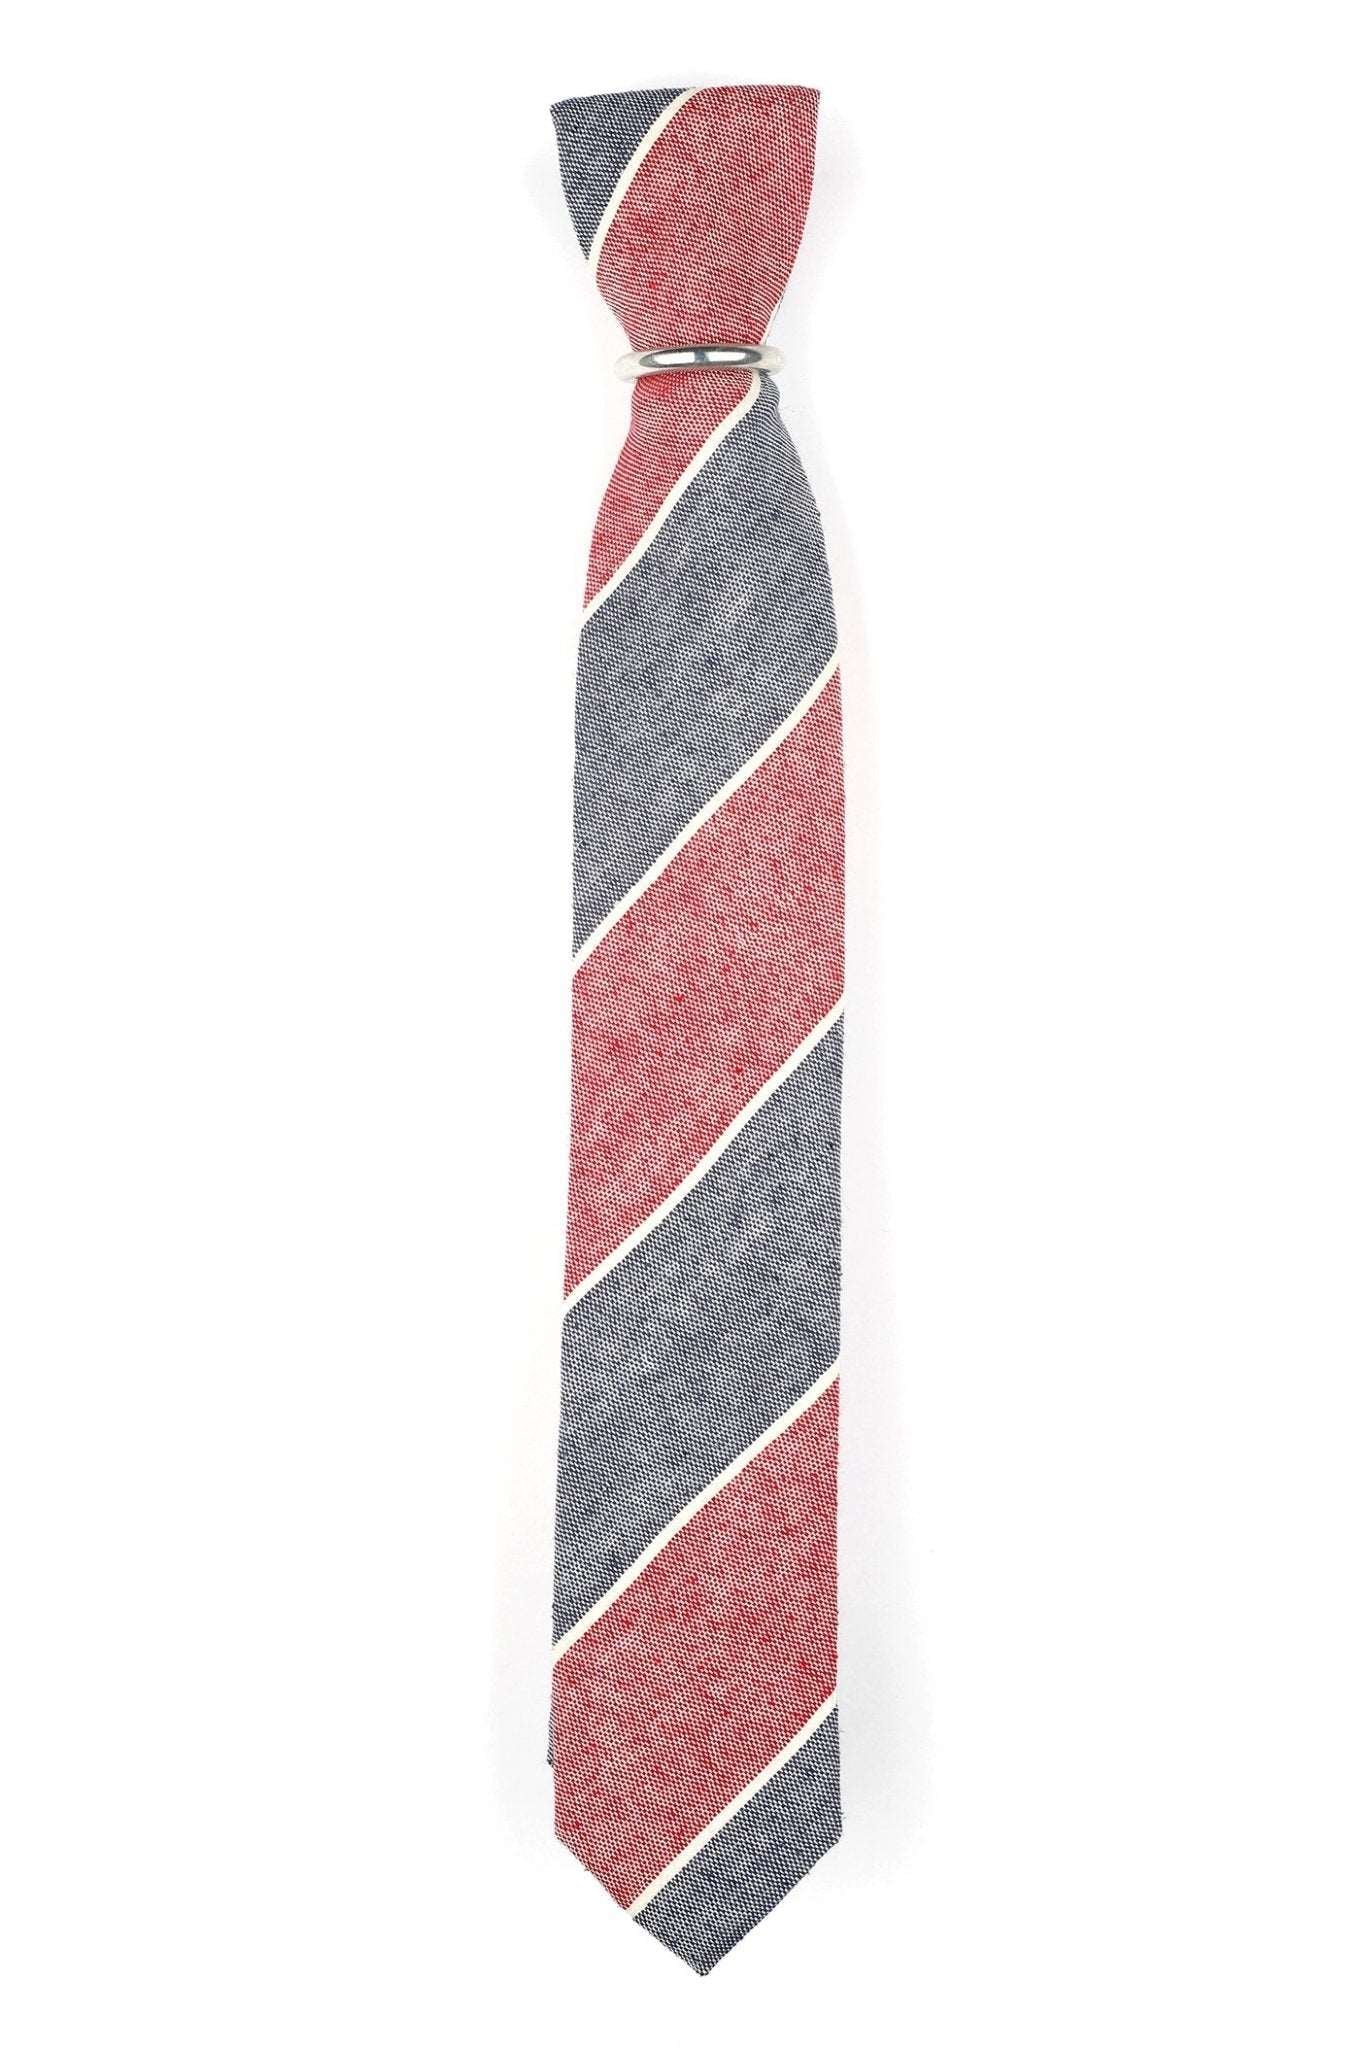 Schmale Krawatte mit Blpckstreifen - REAL GUYS